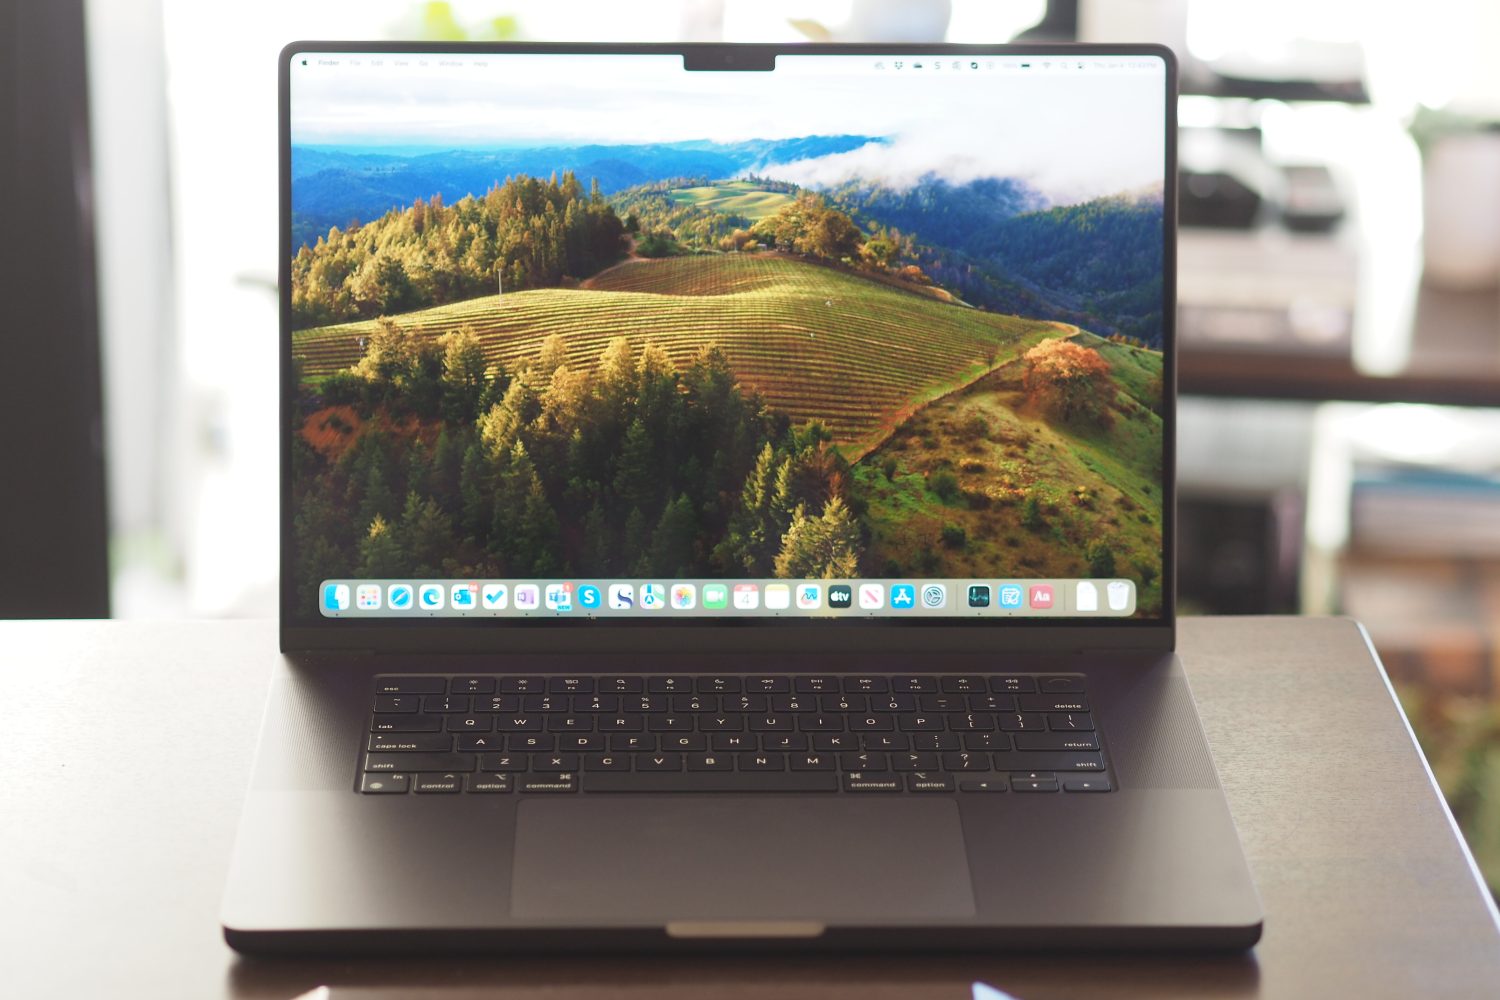 Vista frontal del Apple MacBook Pro 16 que muestra la pantalla y el teclado.